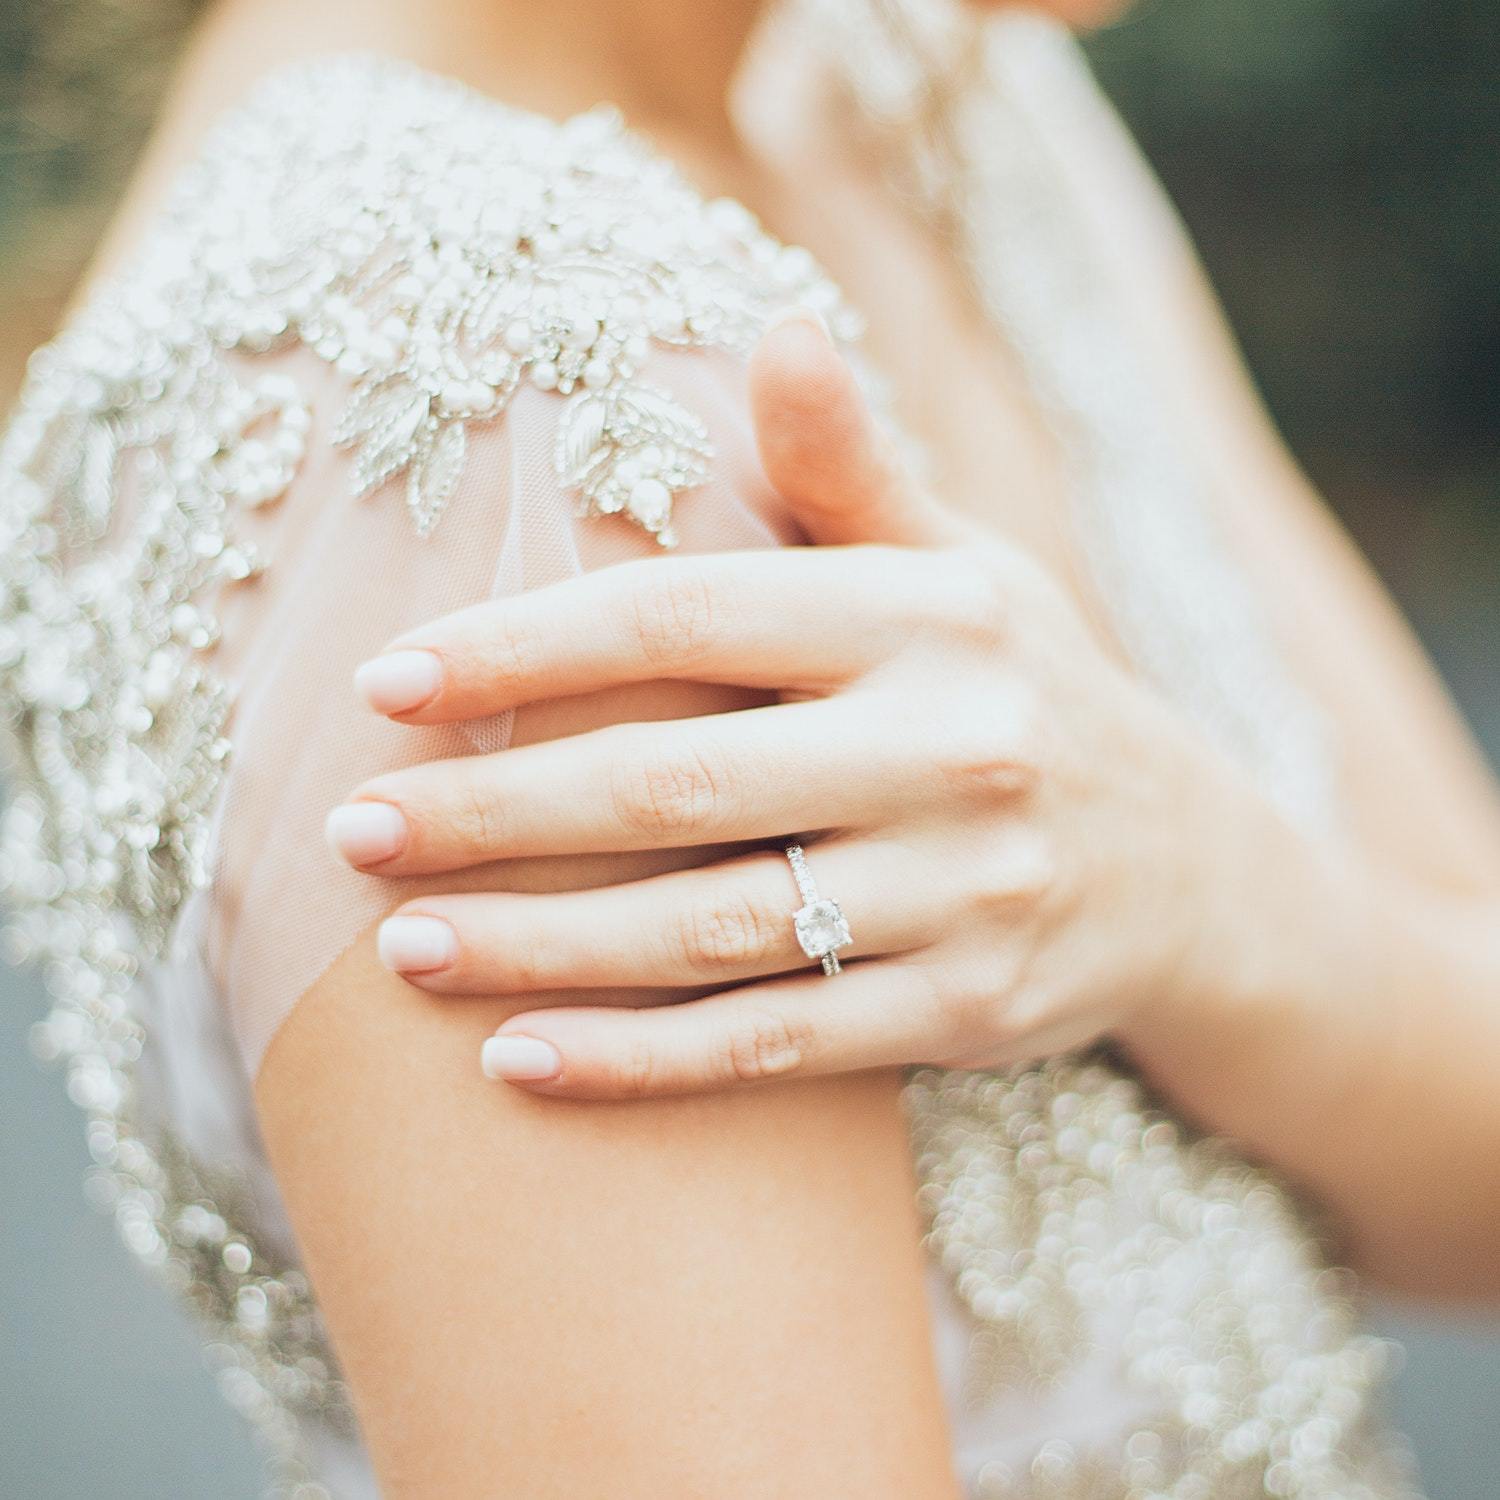 bride wearing engagement ring